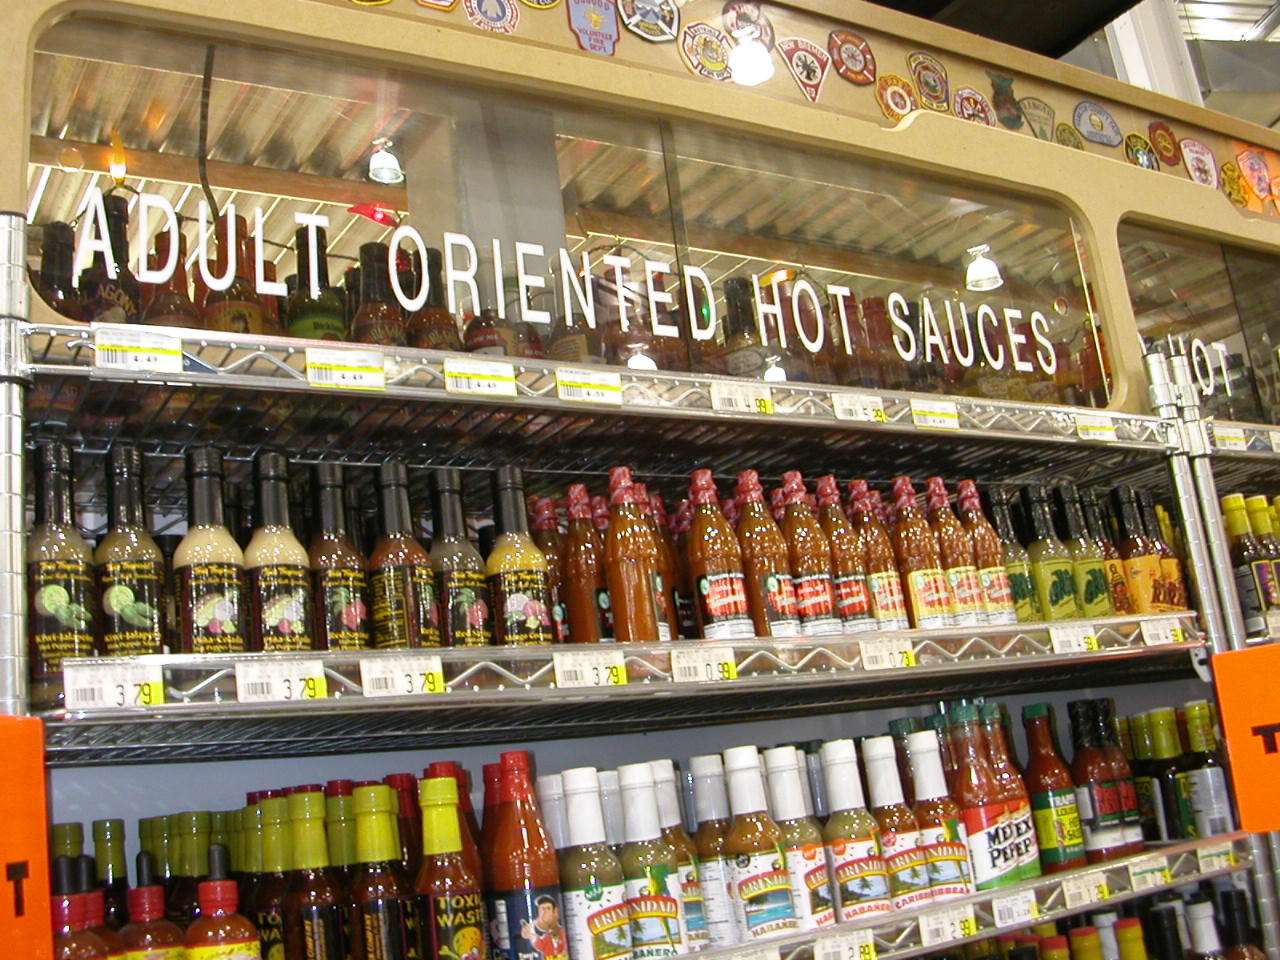 shelves of hot sauce